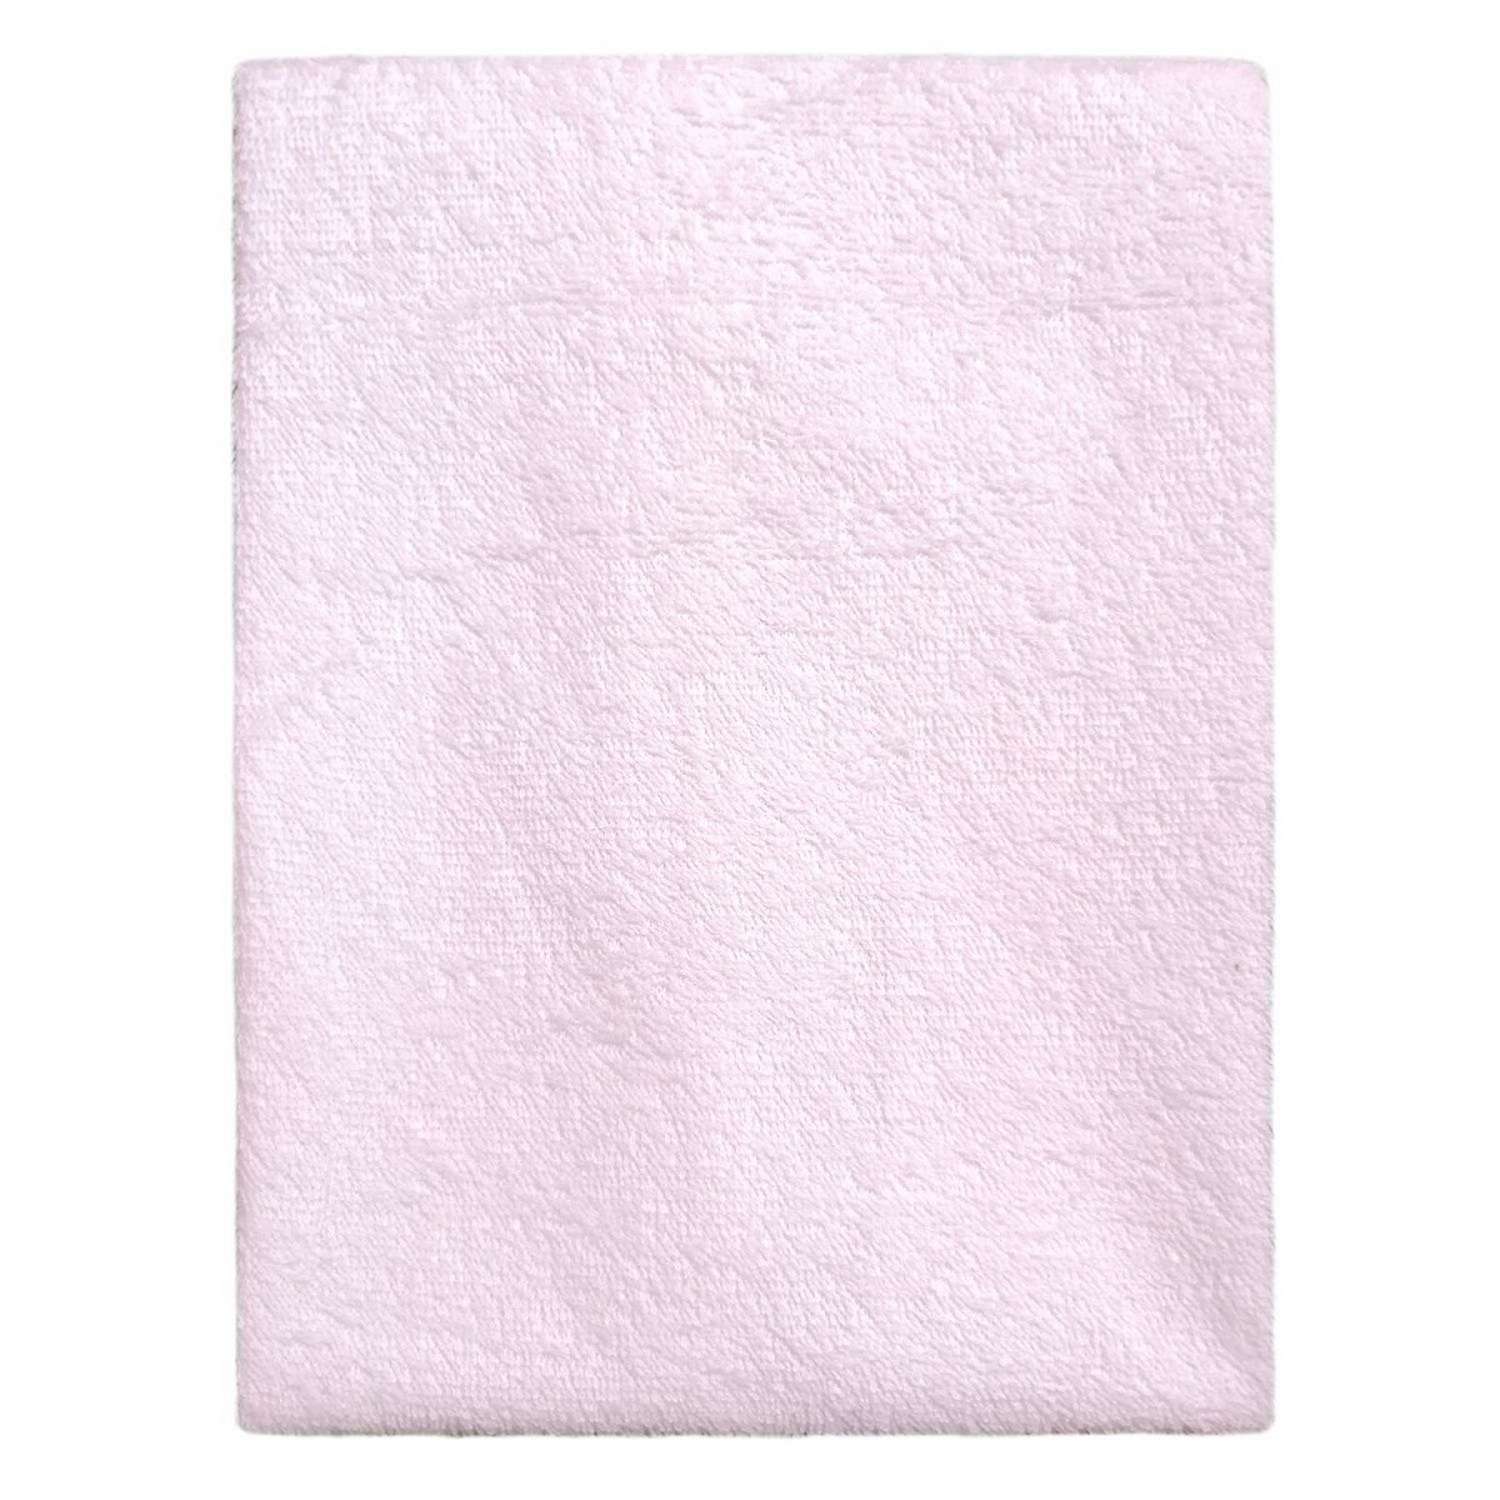 Наматрасник Пелигрин для детской кровати непромокаемый из клеенки с махровым покрытием 125х65см розовый - фото 2